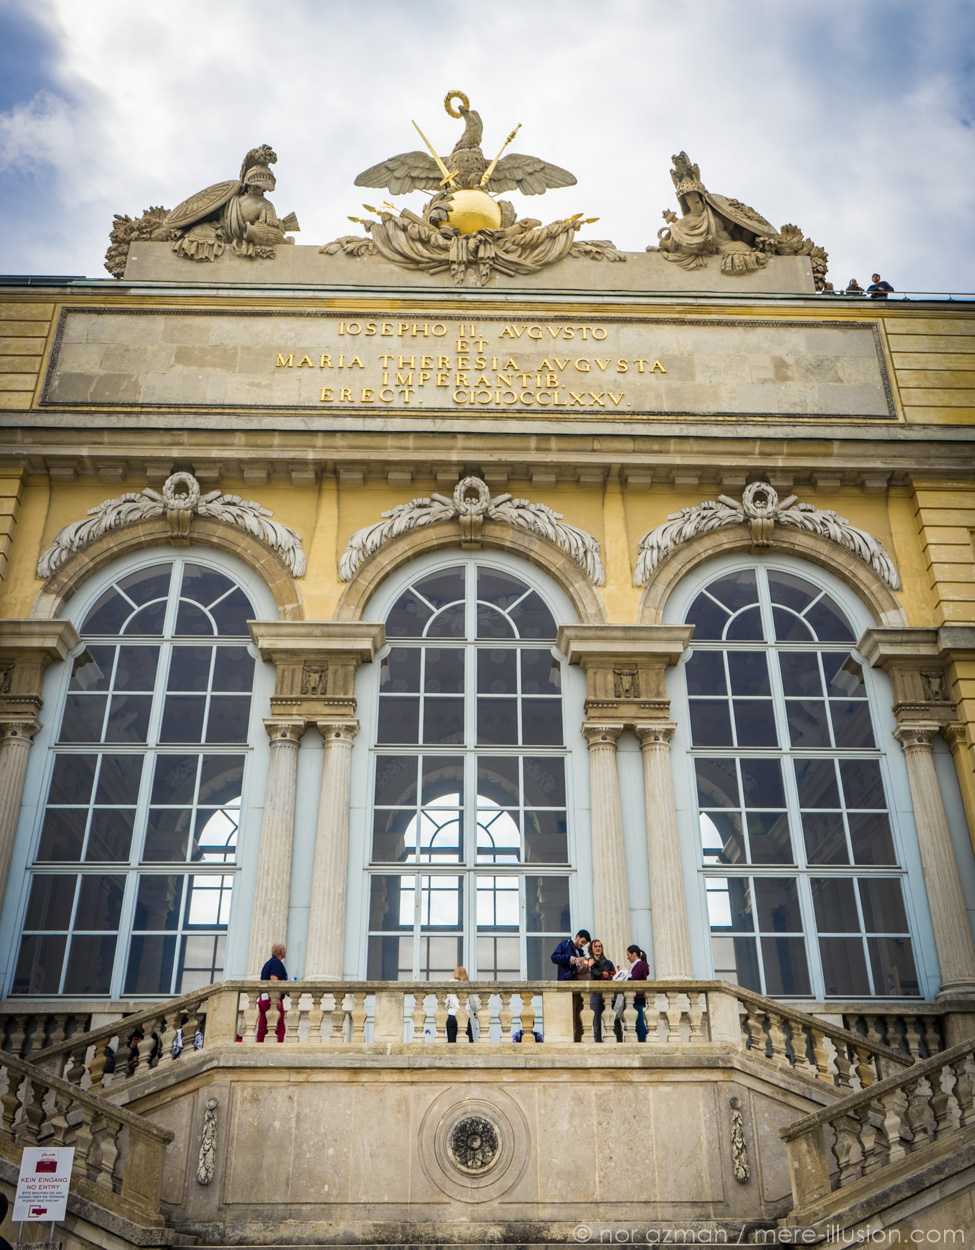 Schonbrunn Palace in Vienna, Austria by Nor Azman